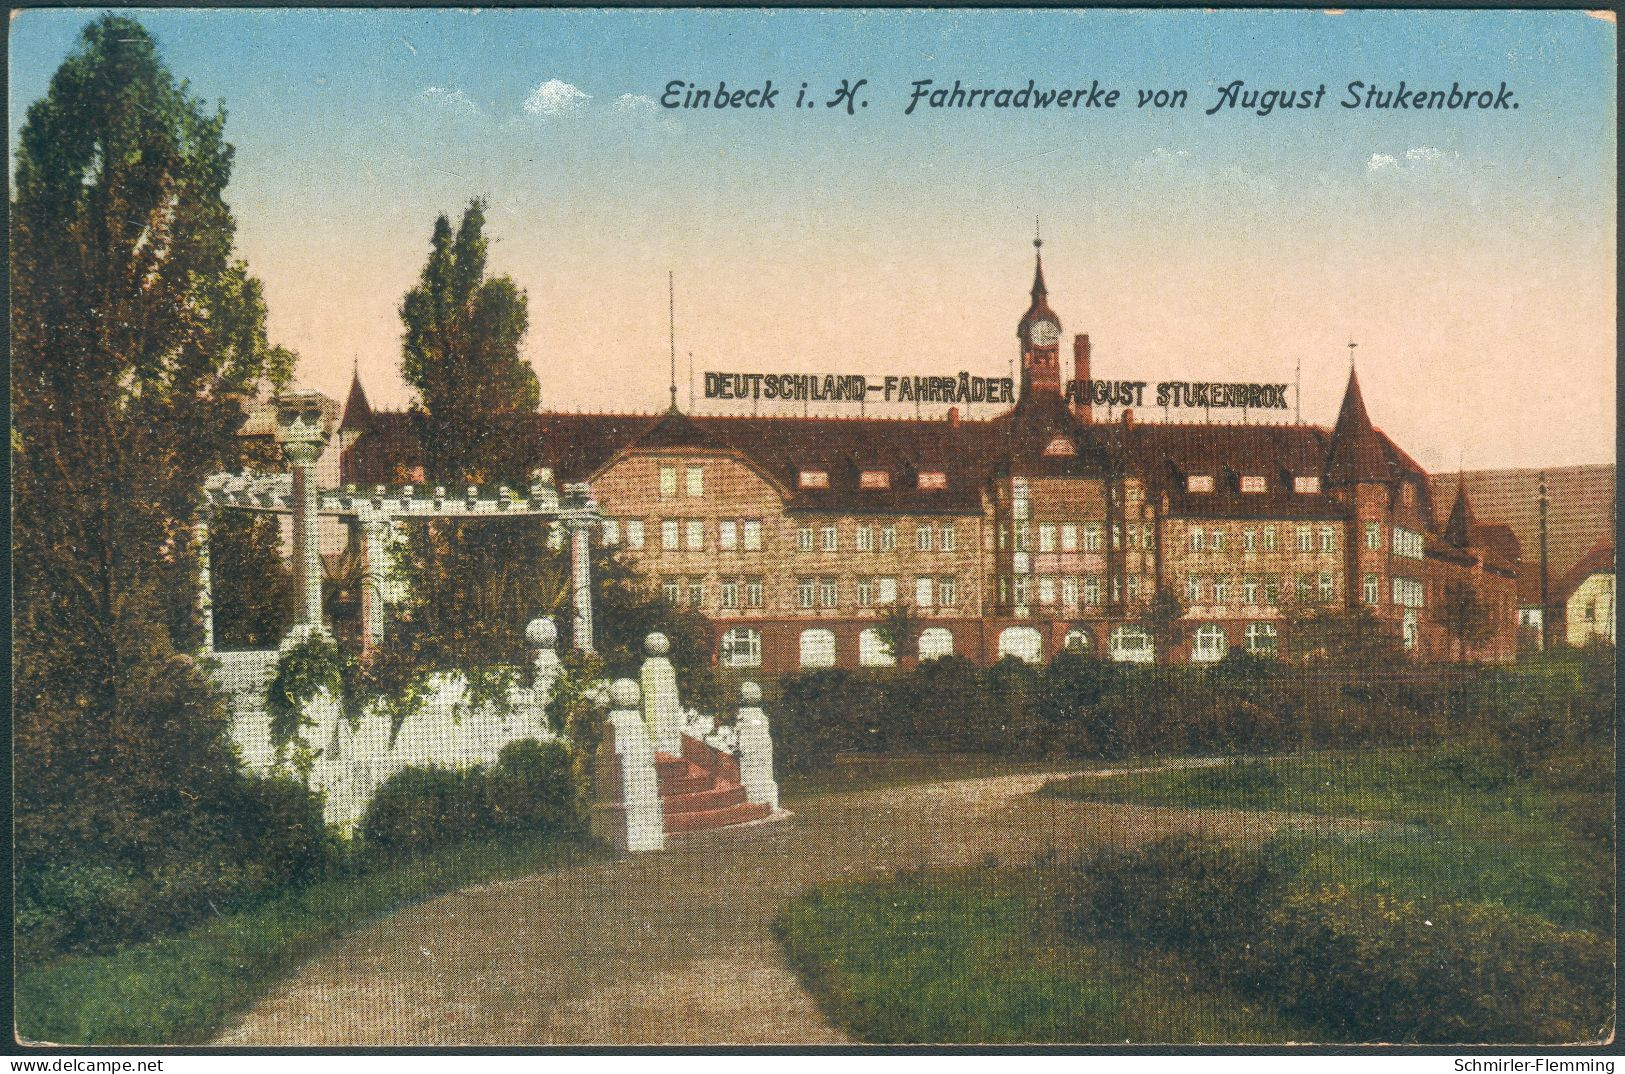 Postkarte Einbeck I. H. Fahrradwerke Von August Stukenbrok, 1906 Farbig, Ungelaufen, II - Mercanti